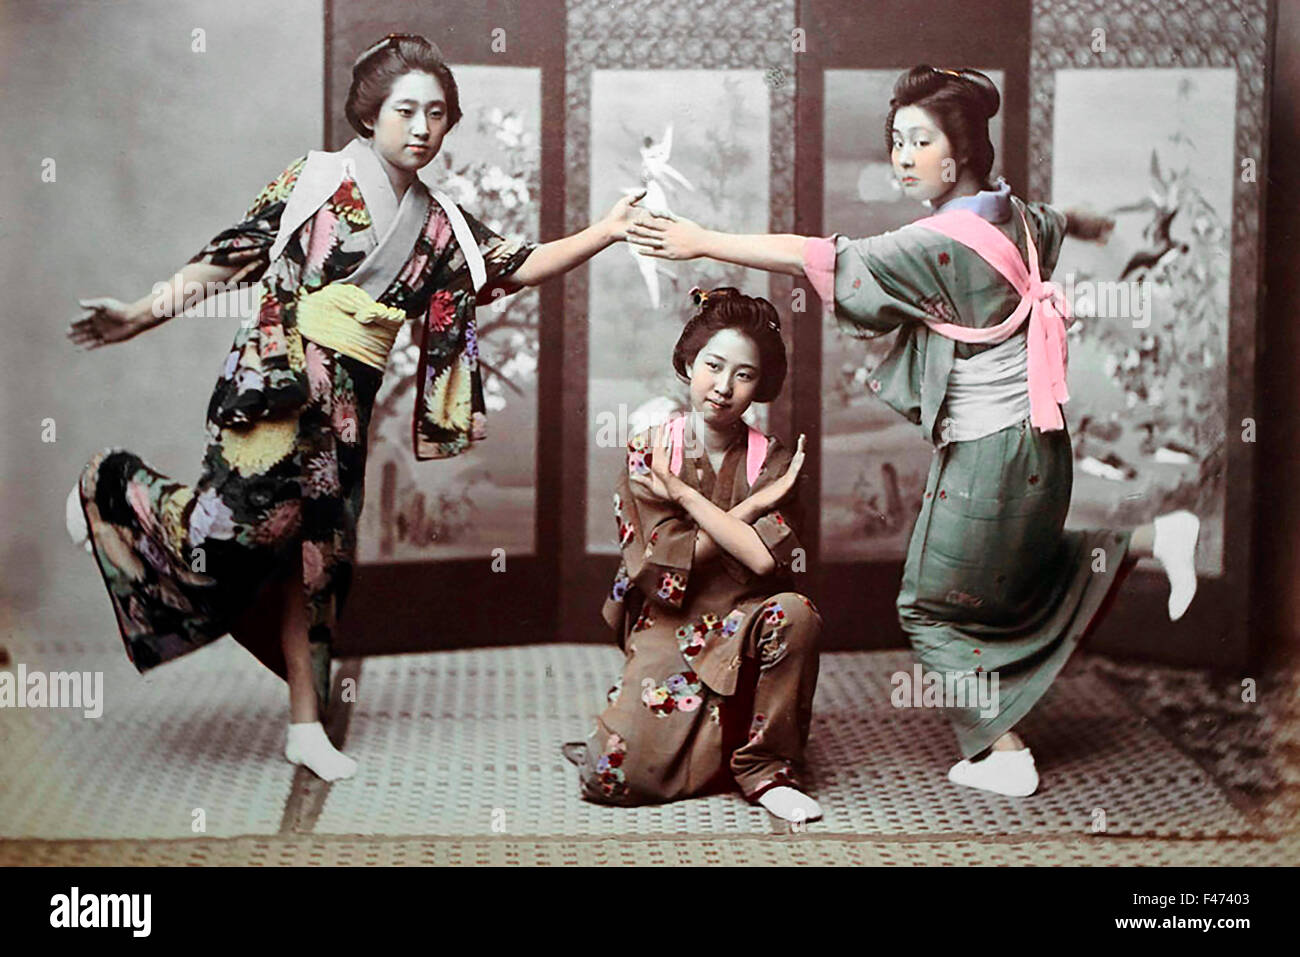 Danza japonesa, Japón Foto de stock